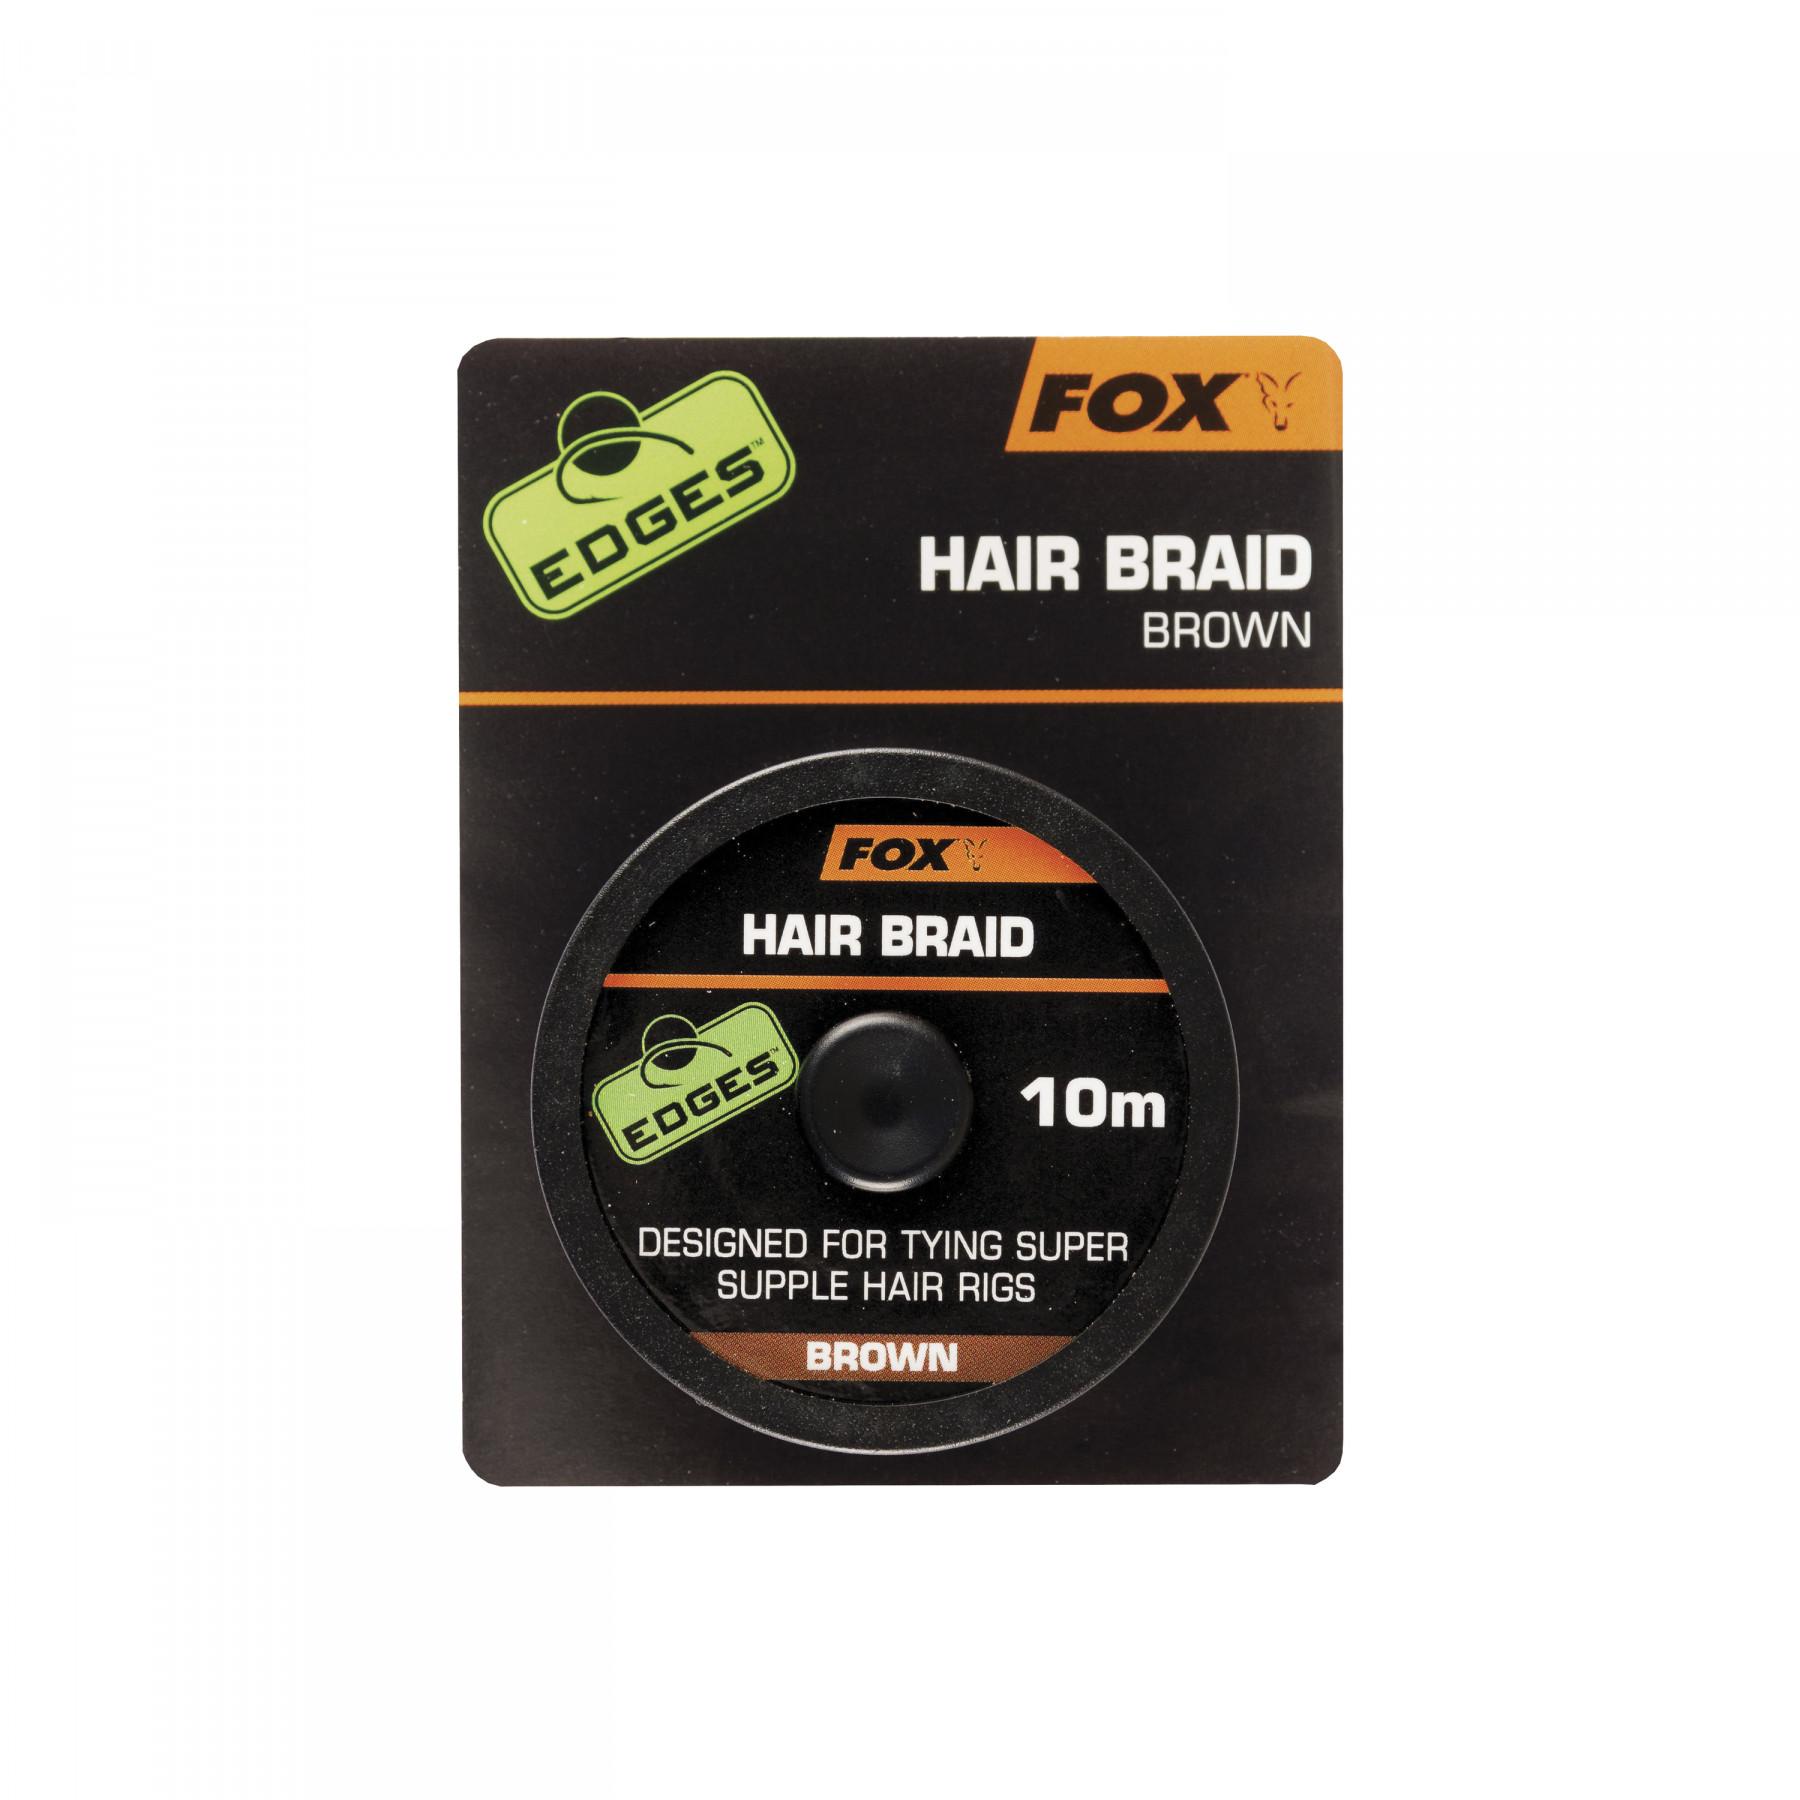 Braided hair braid Fox 10m Edges